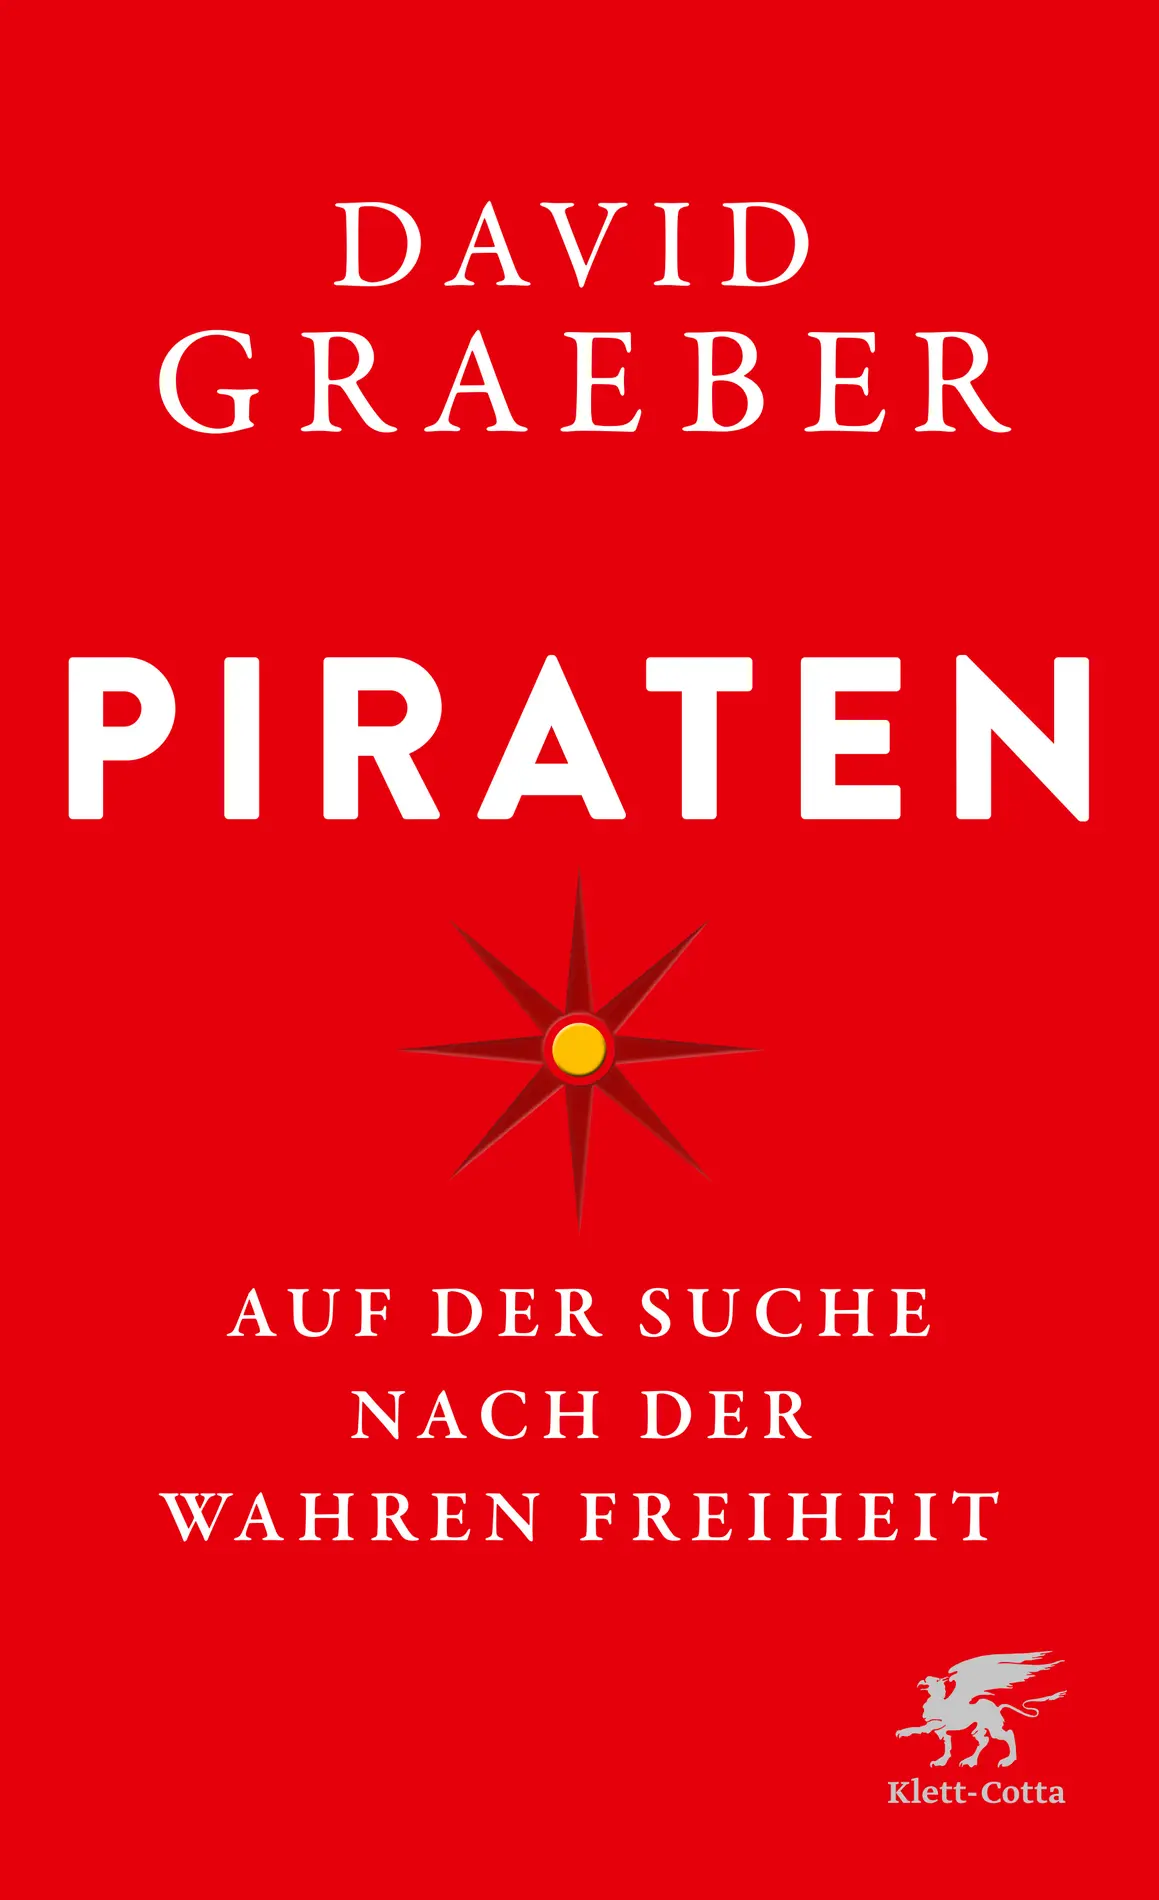 Buchcover: Piraten von David Graeber